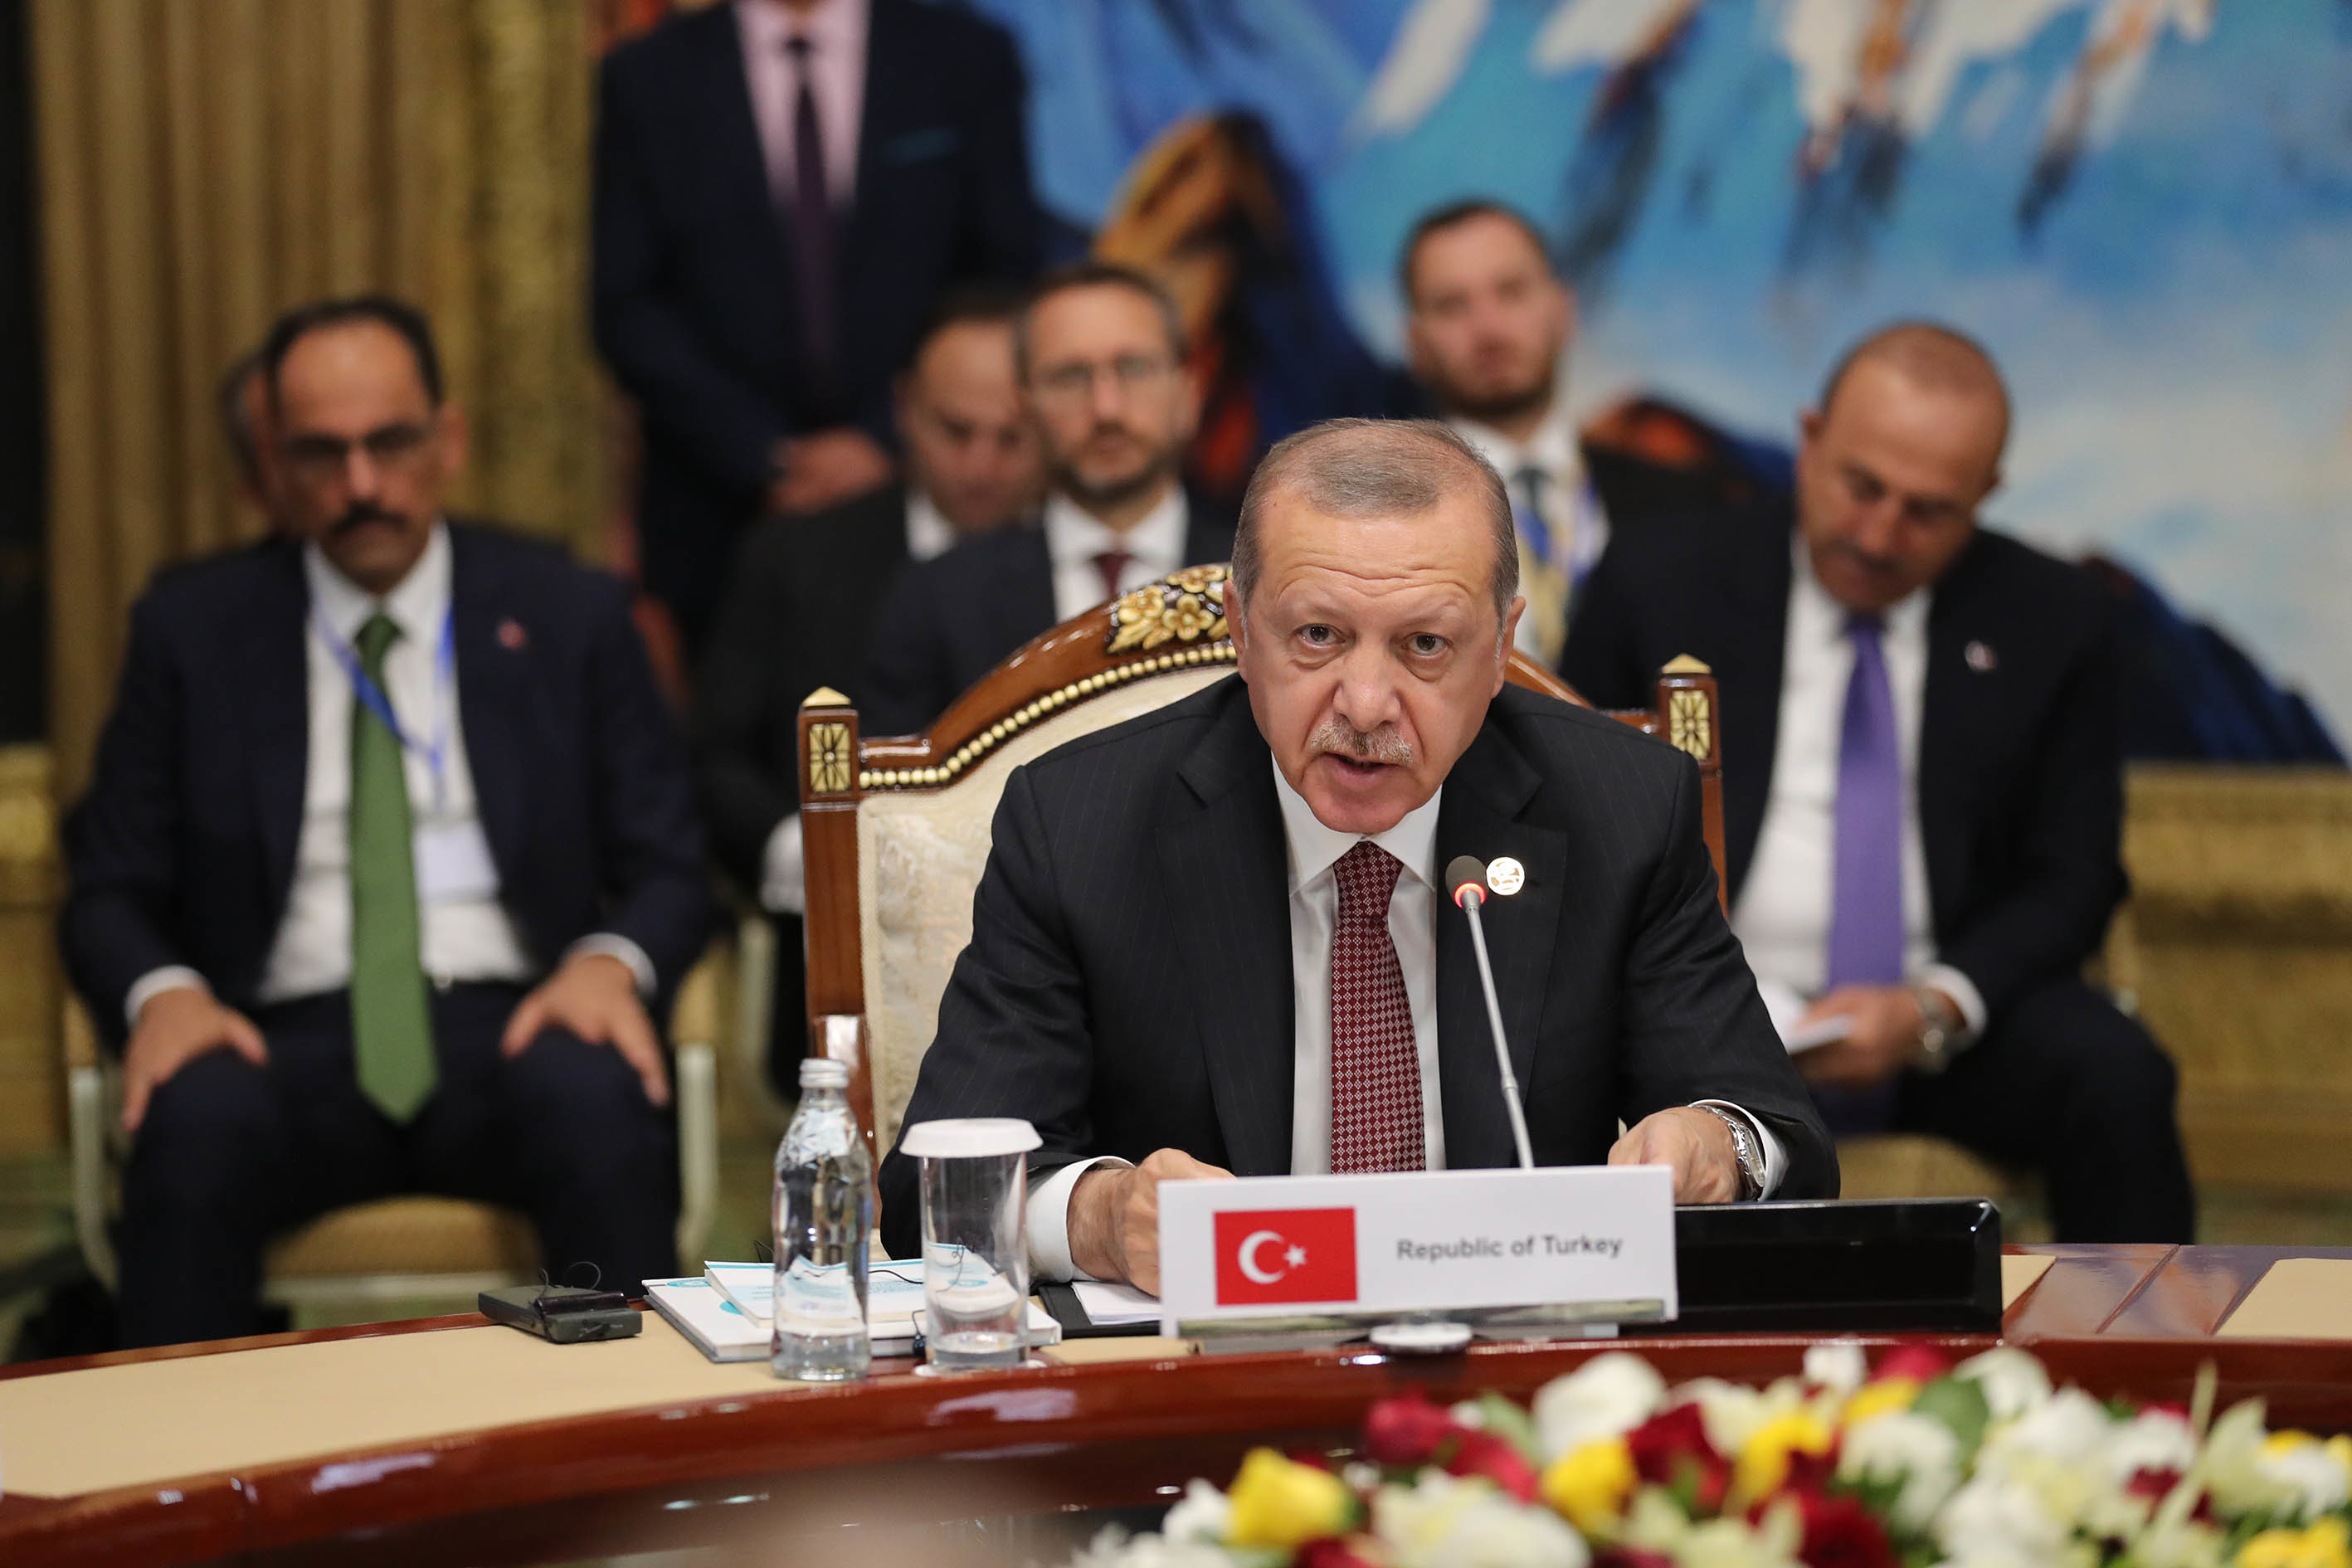 Реджеп Тайип Эрдоган: 21 век станет веком Турции